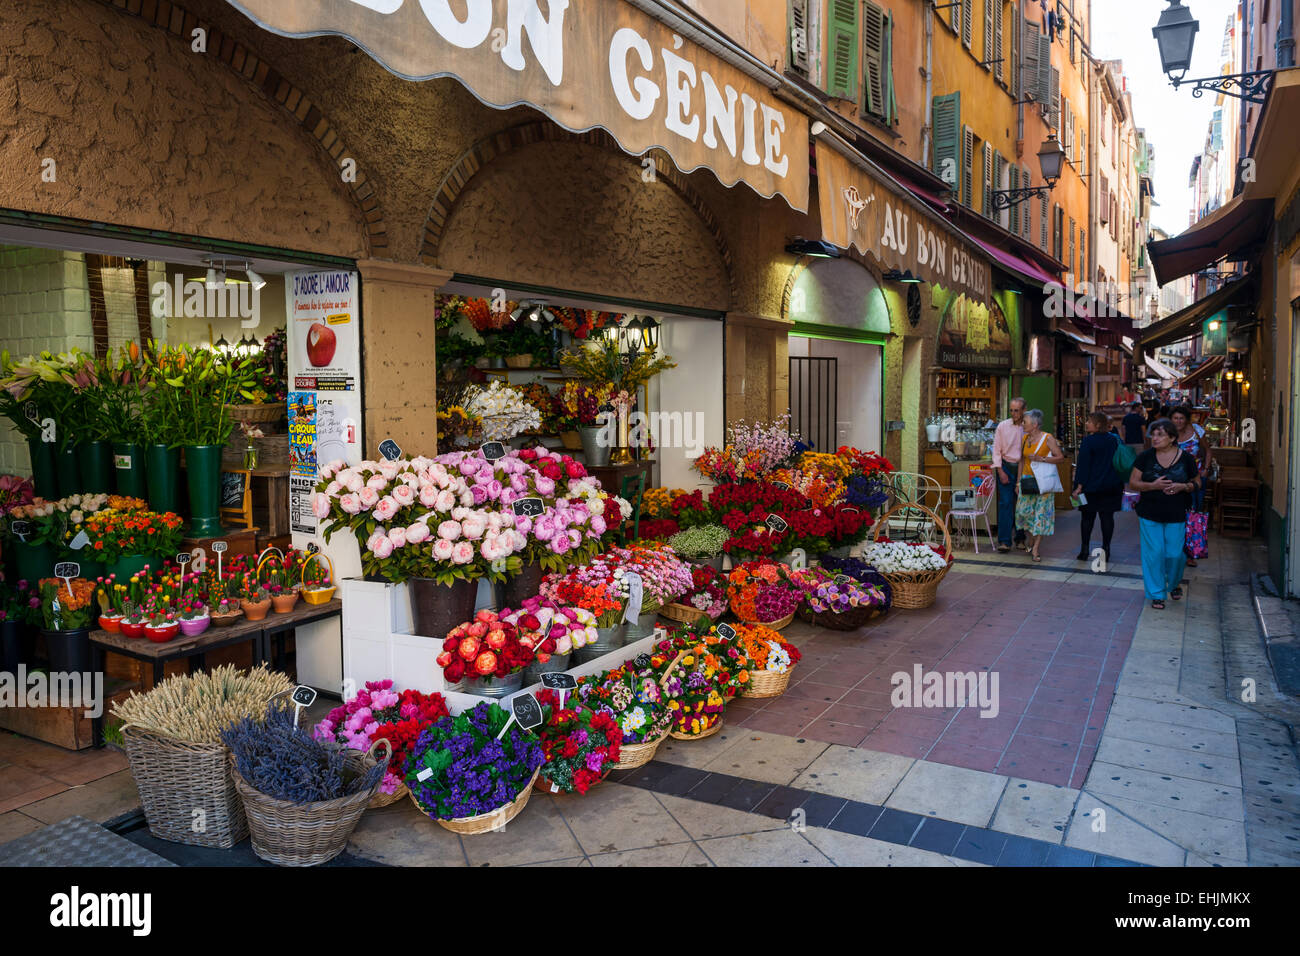 Nizza, Francia - 2 ottobre 2014: "Au Bon genie' negozio di fiori sulla via pedonale Rue Pairoliere, una pittoresca strada dello shopping di Nizza Foto Stock